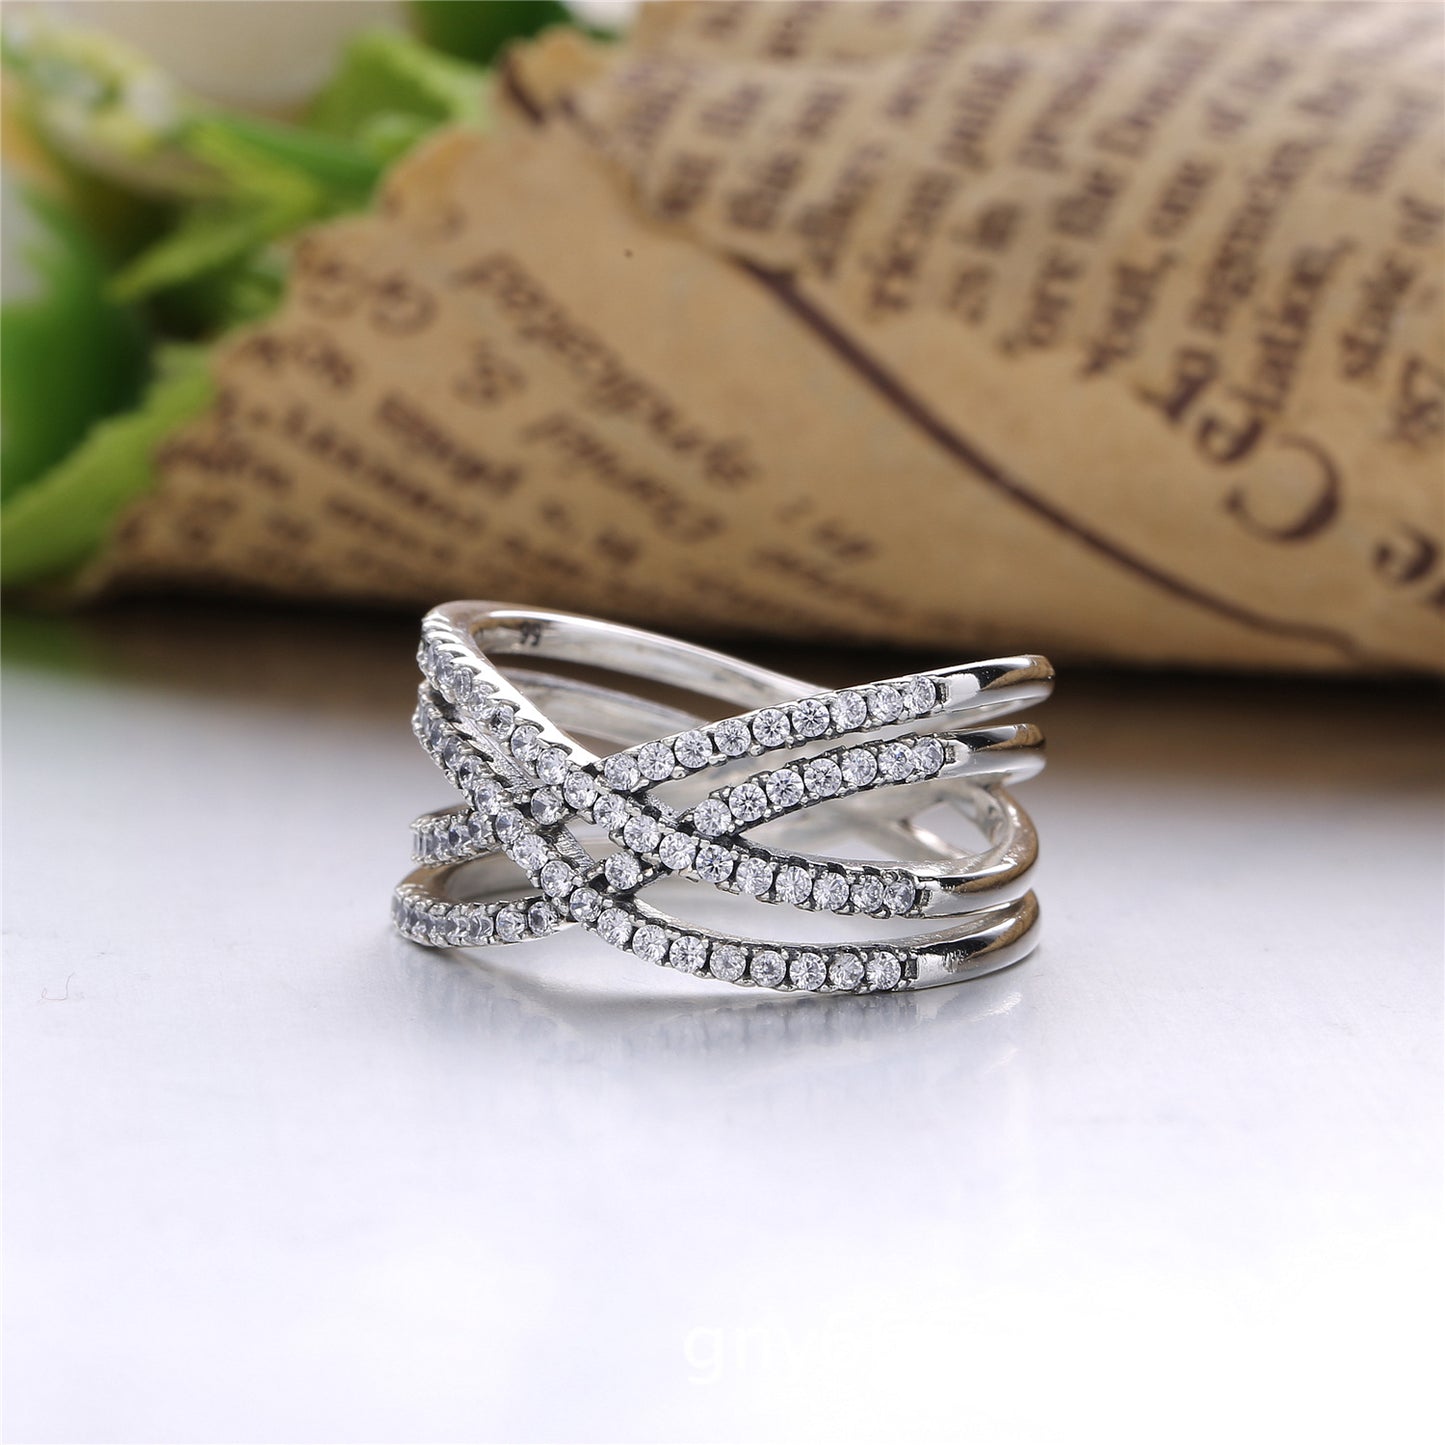 Cross Sterling Silver Wedding Ring